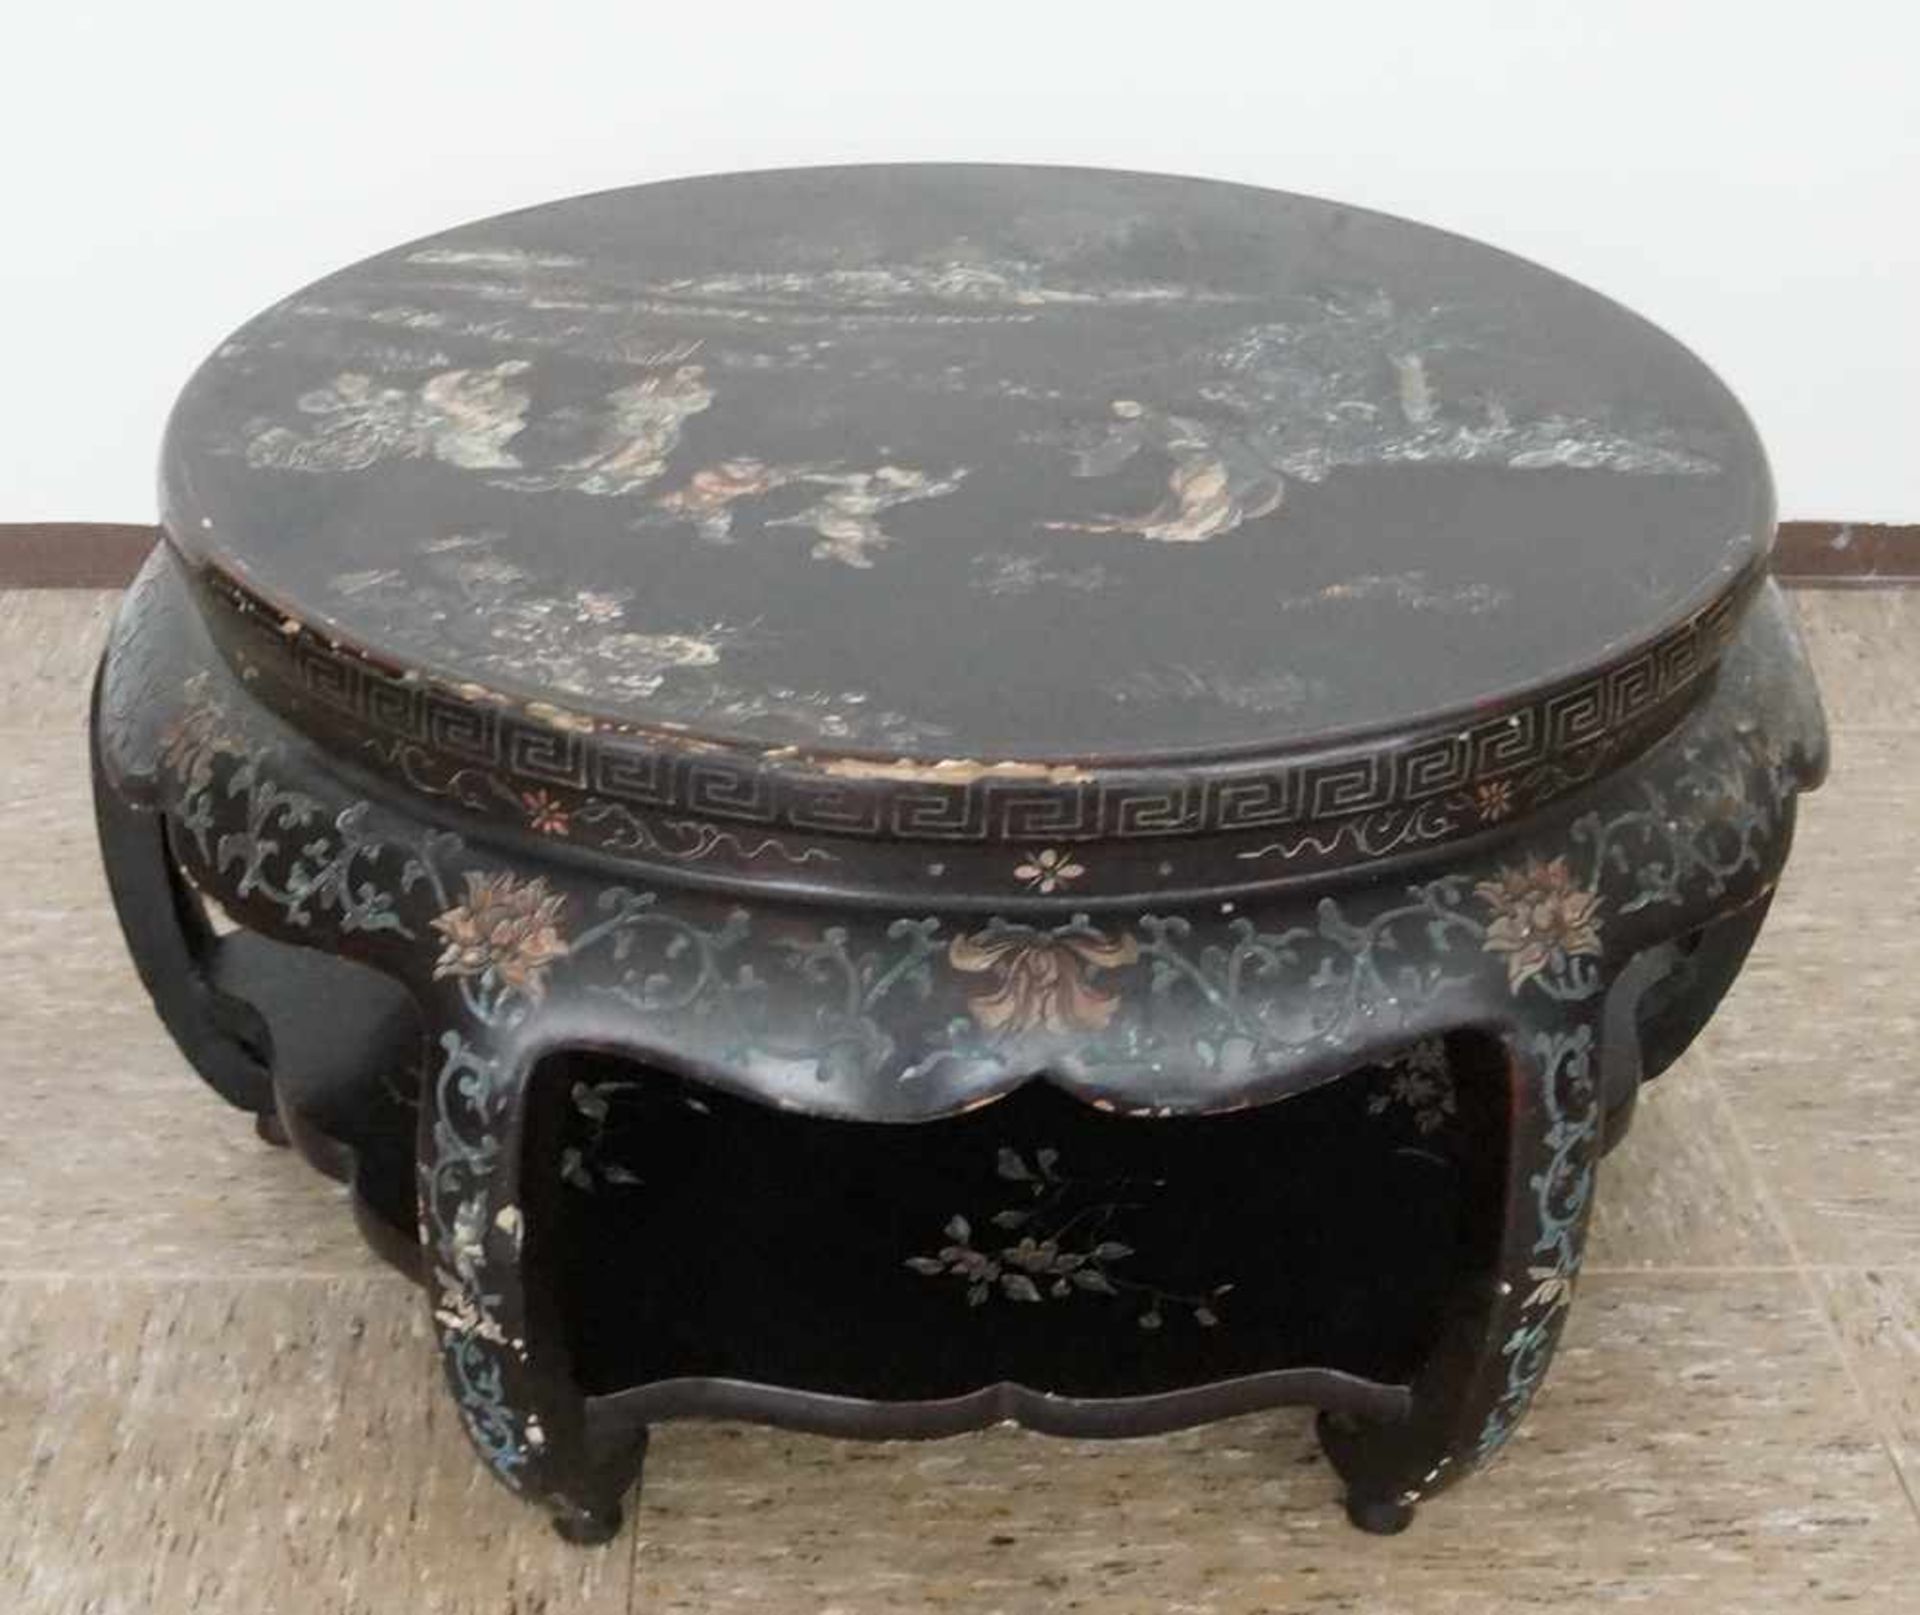 Runder Tisch mit Chinoiserie, besch., H 44 cm, Durchmesser 85cm- - -24.00 % buyer's premium on the